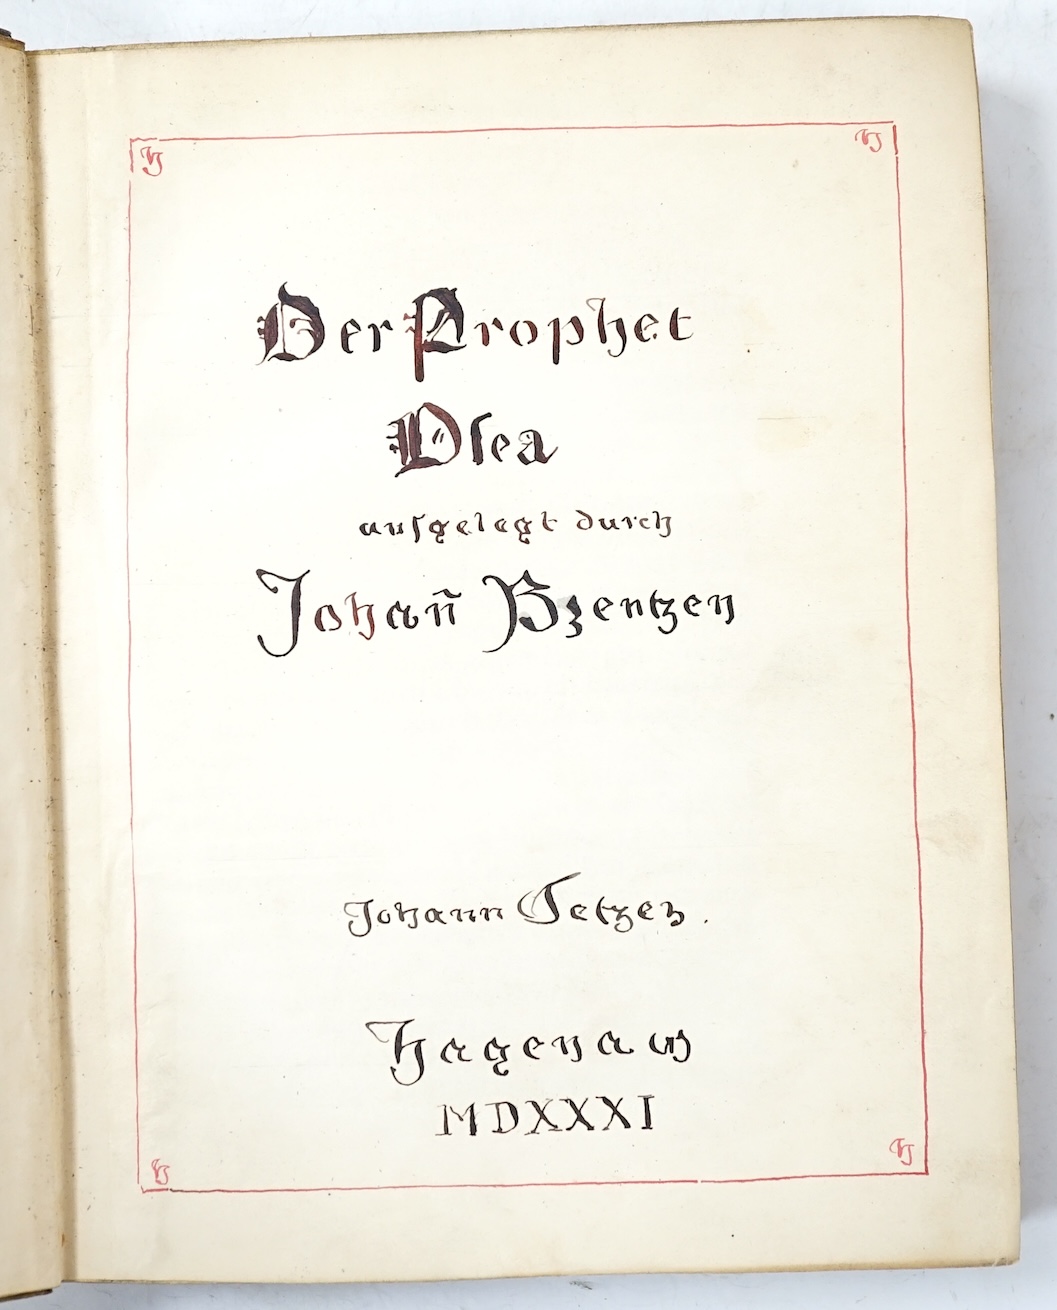 Brenz, Johannes - Der Prophet Osea, 8vo, vellum, lacking title (manuscript replacement), Johann Setzer, Hagenau, 1531